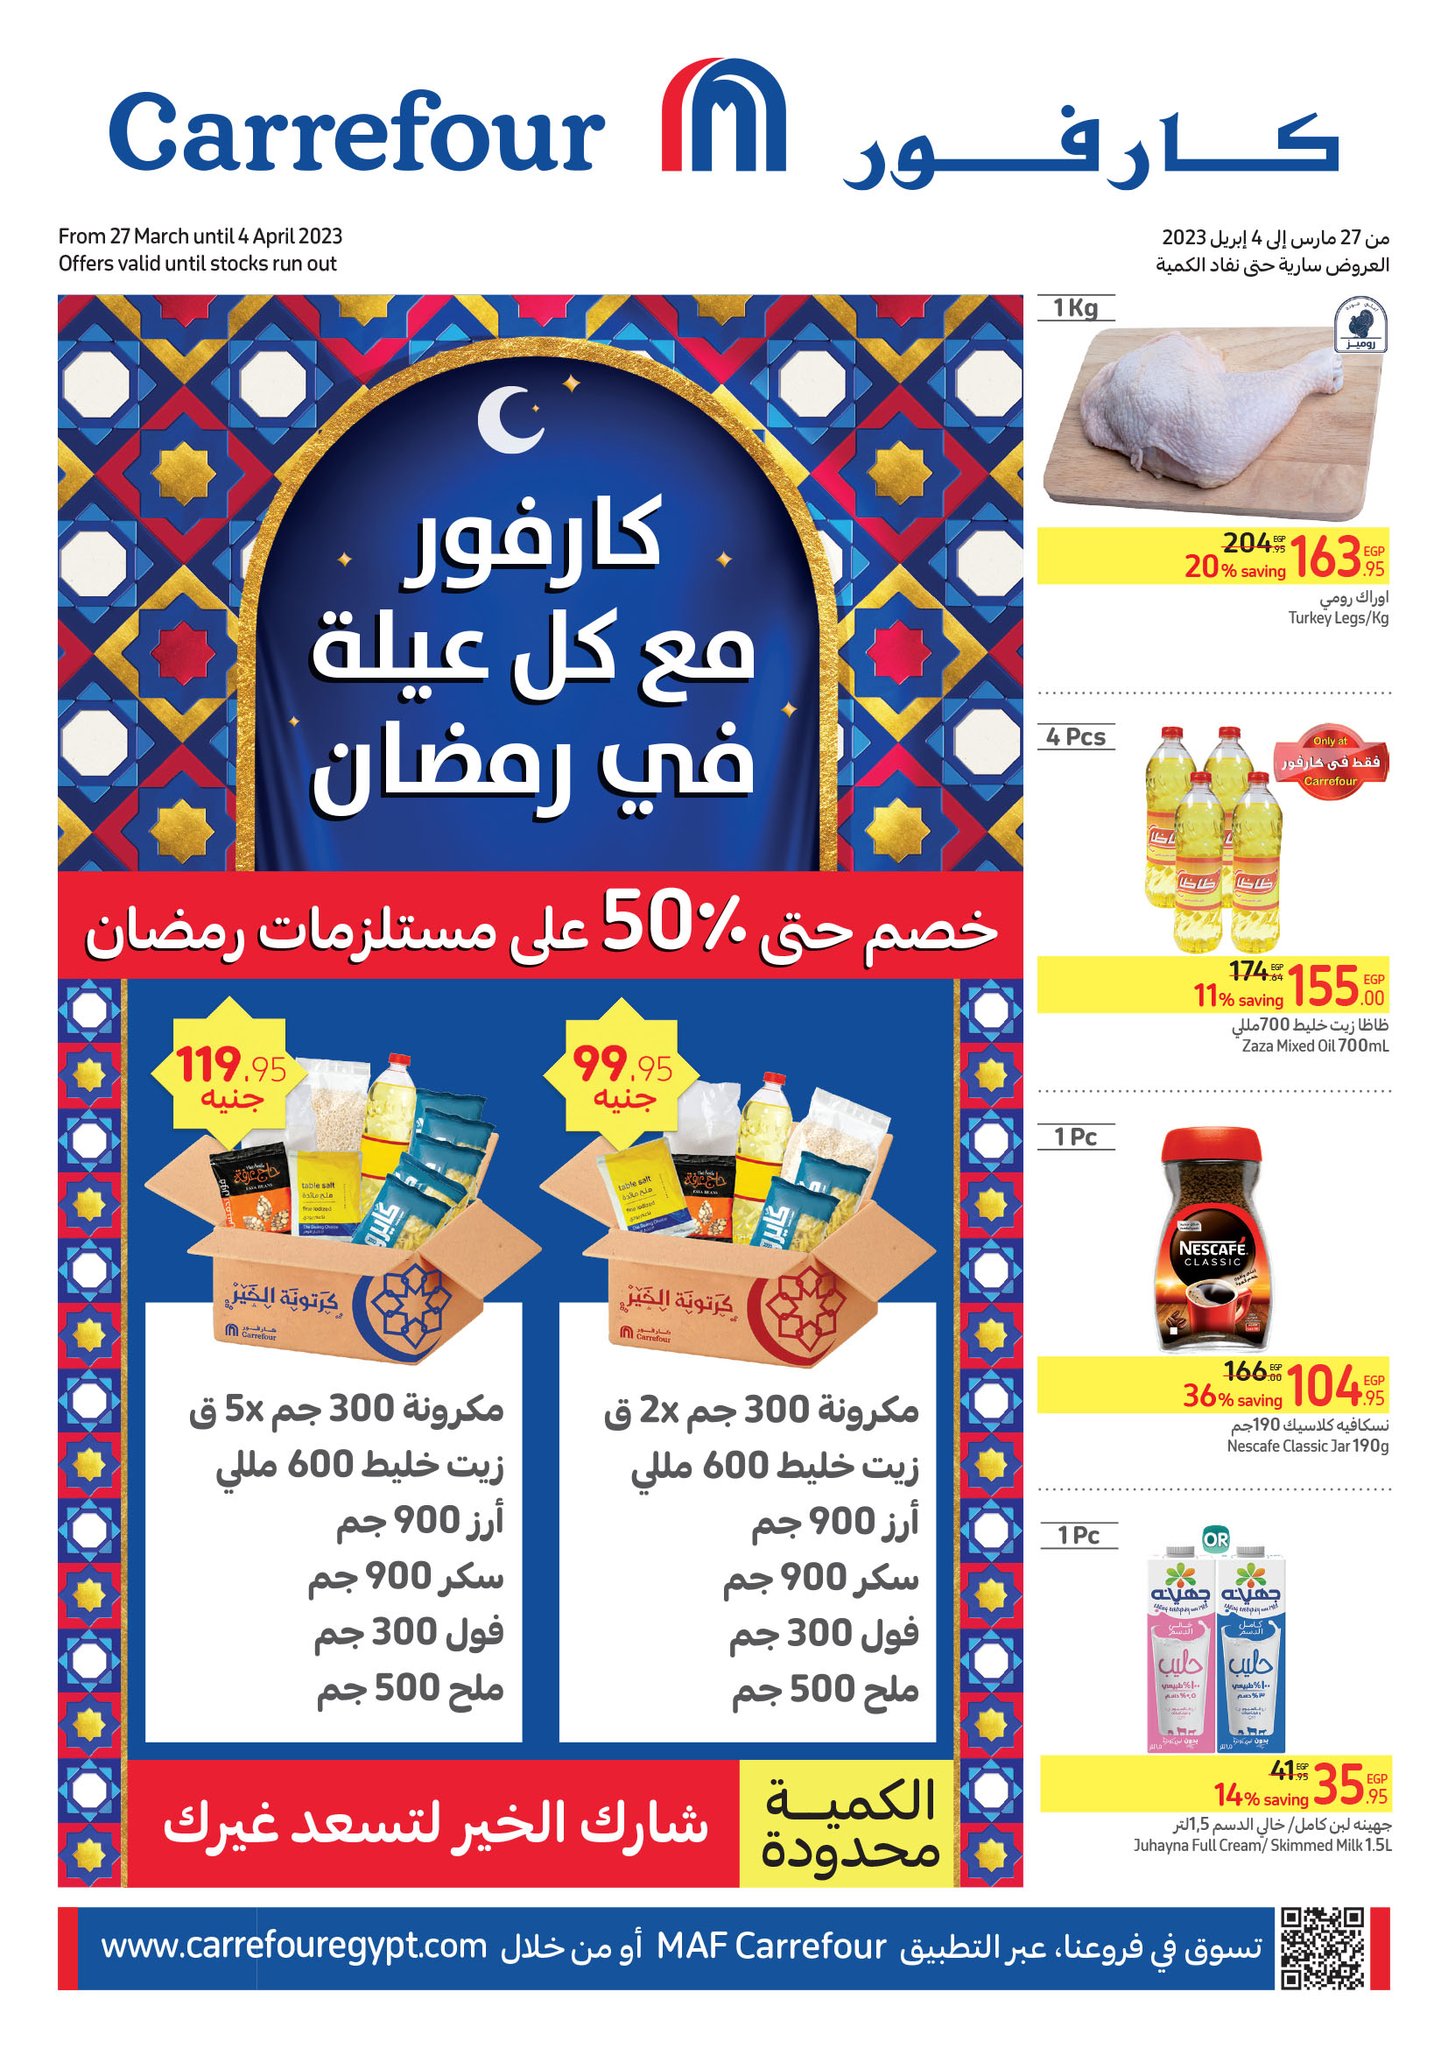 مجلة كارفور في رمضان ونهاية الأسبوع مفاجآت نار على كل الأصناف تقل عن السوق بنسبة 50% 2